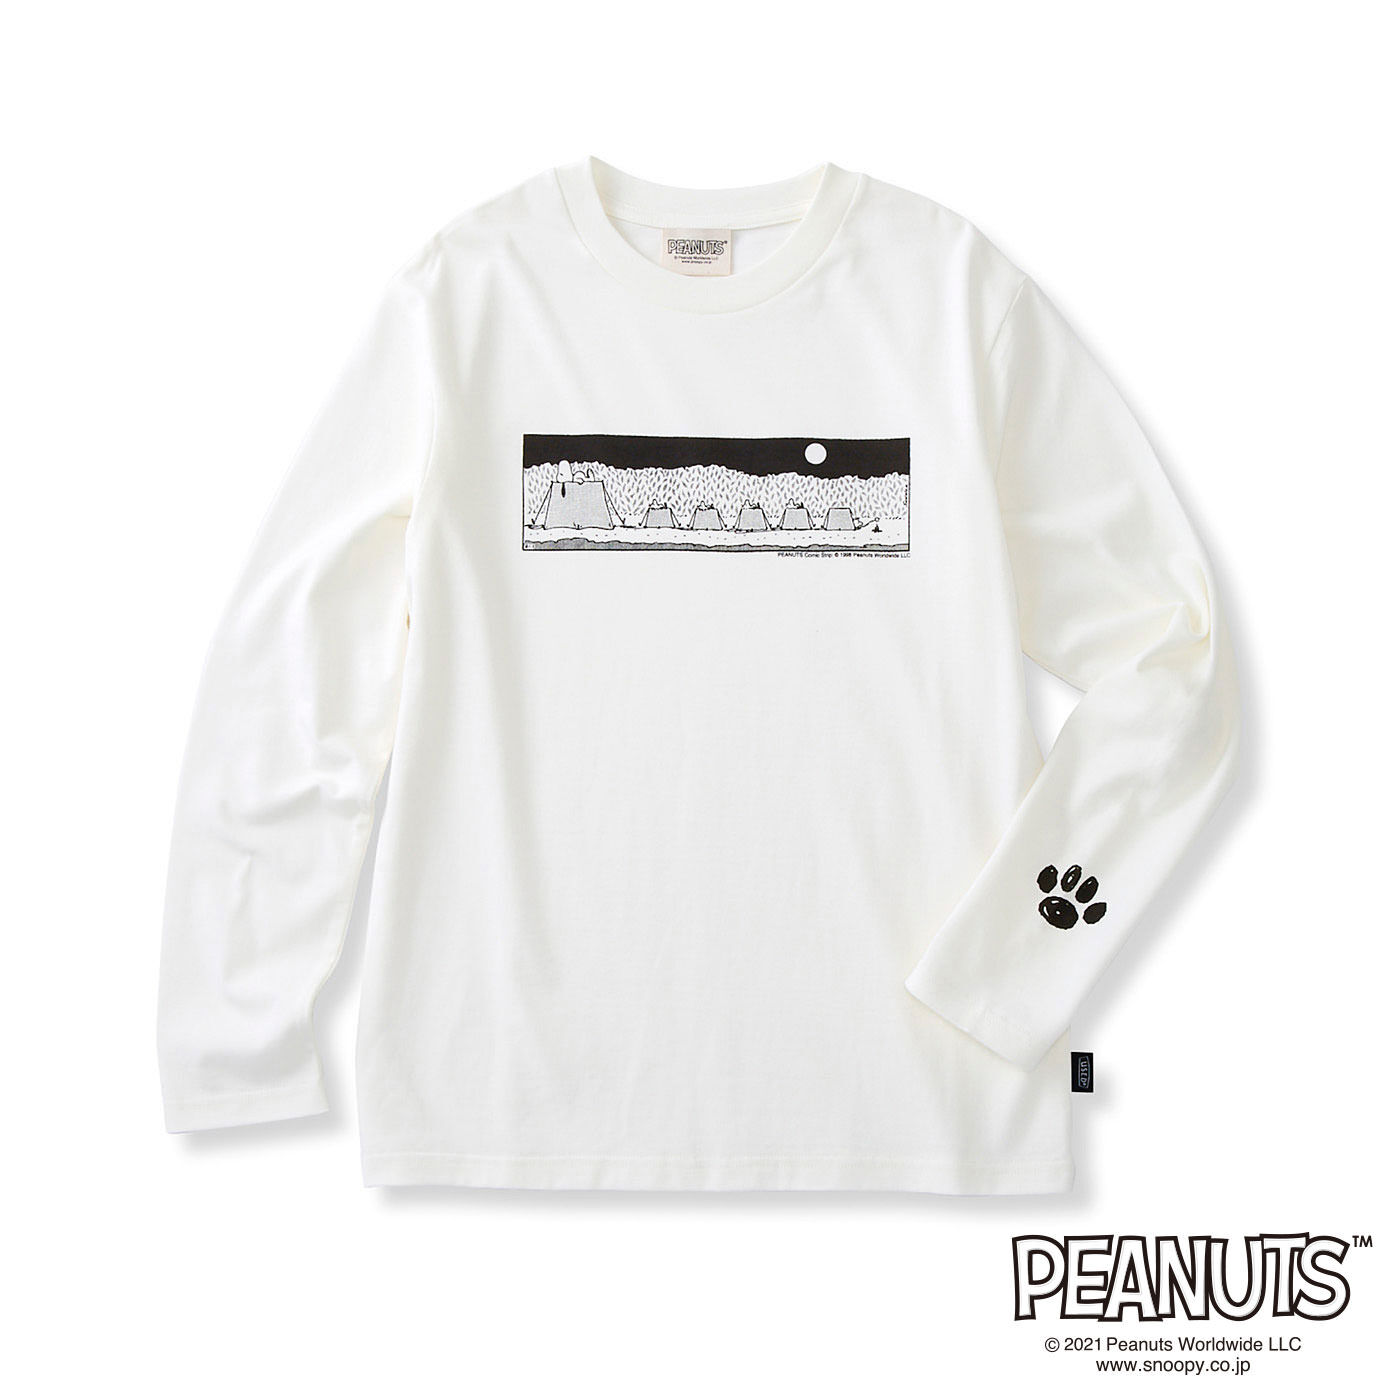 Real Stock|PEANUTS　1コマ漫画の長袖Tシャツ〈ホワイト〉|〈ホワイト〉：袖口にはスヌーピーの足跡のワンポイントプリント。